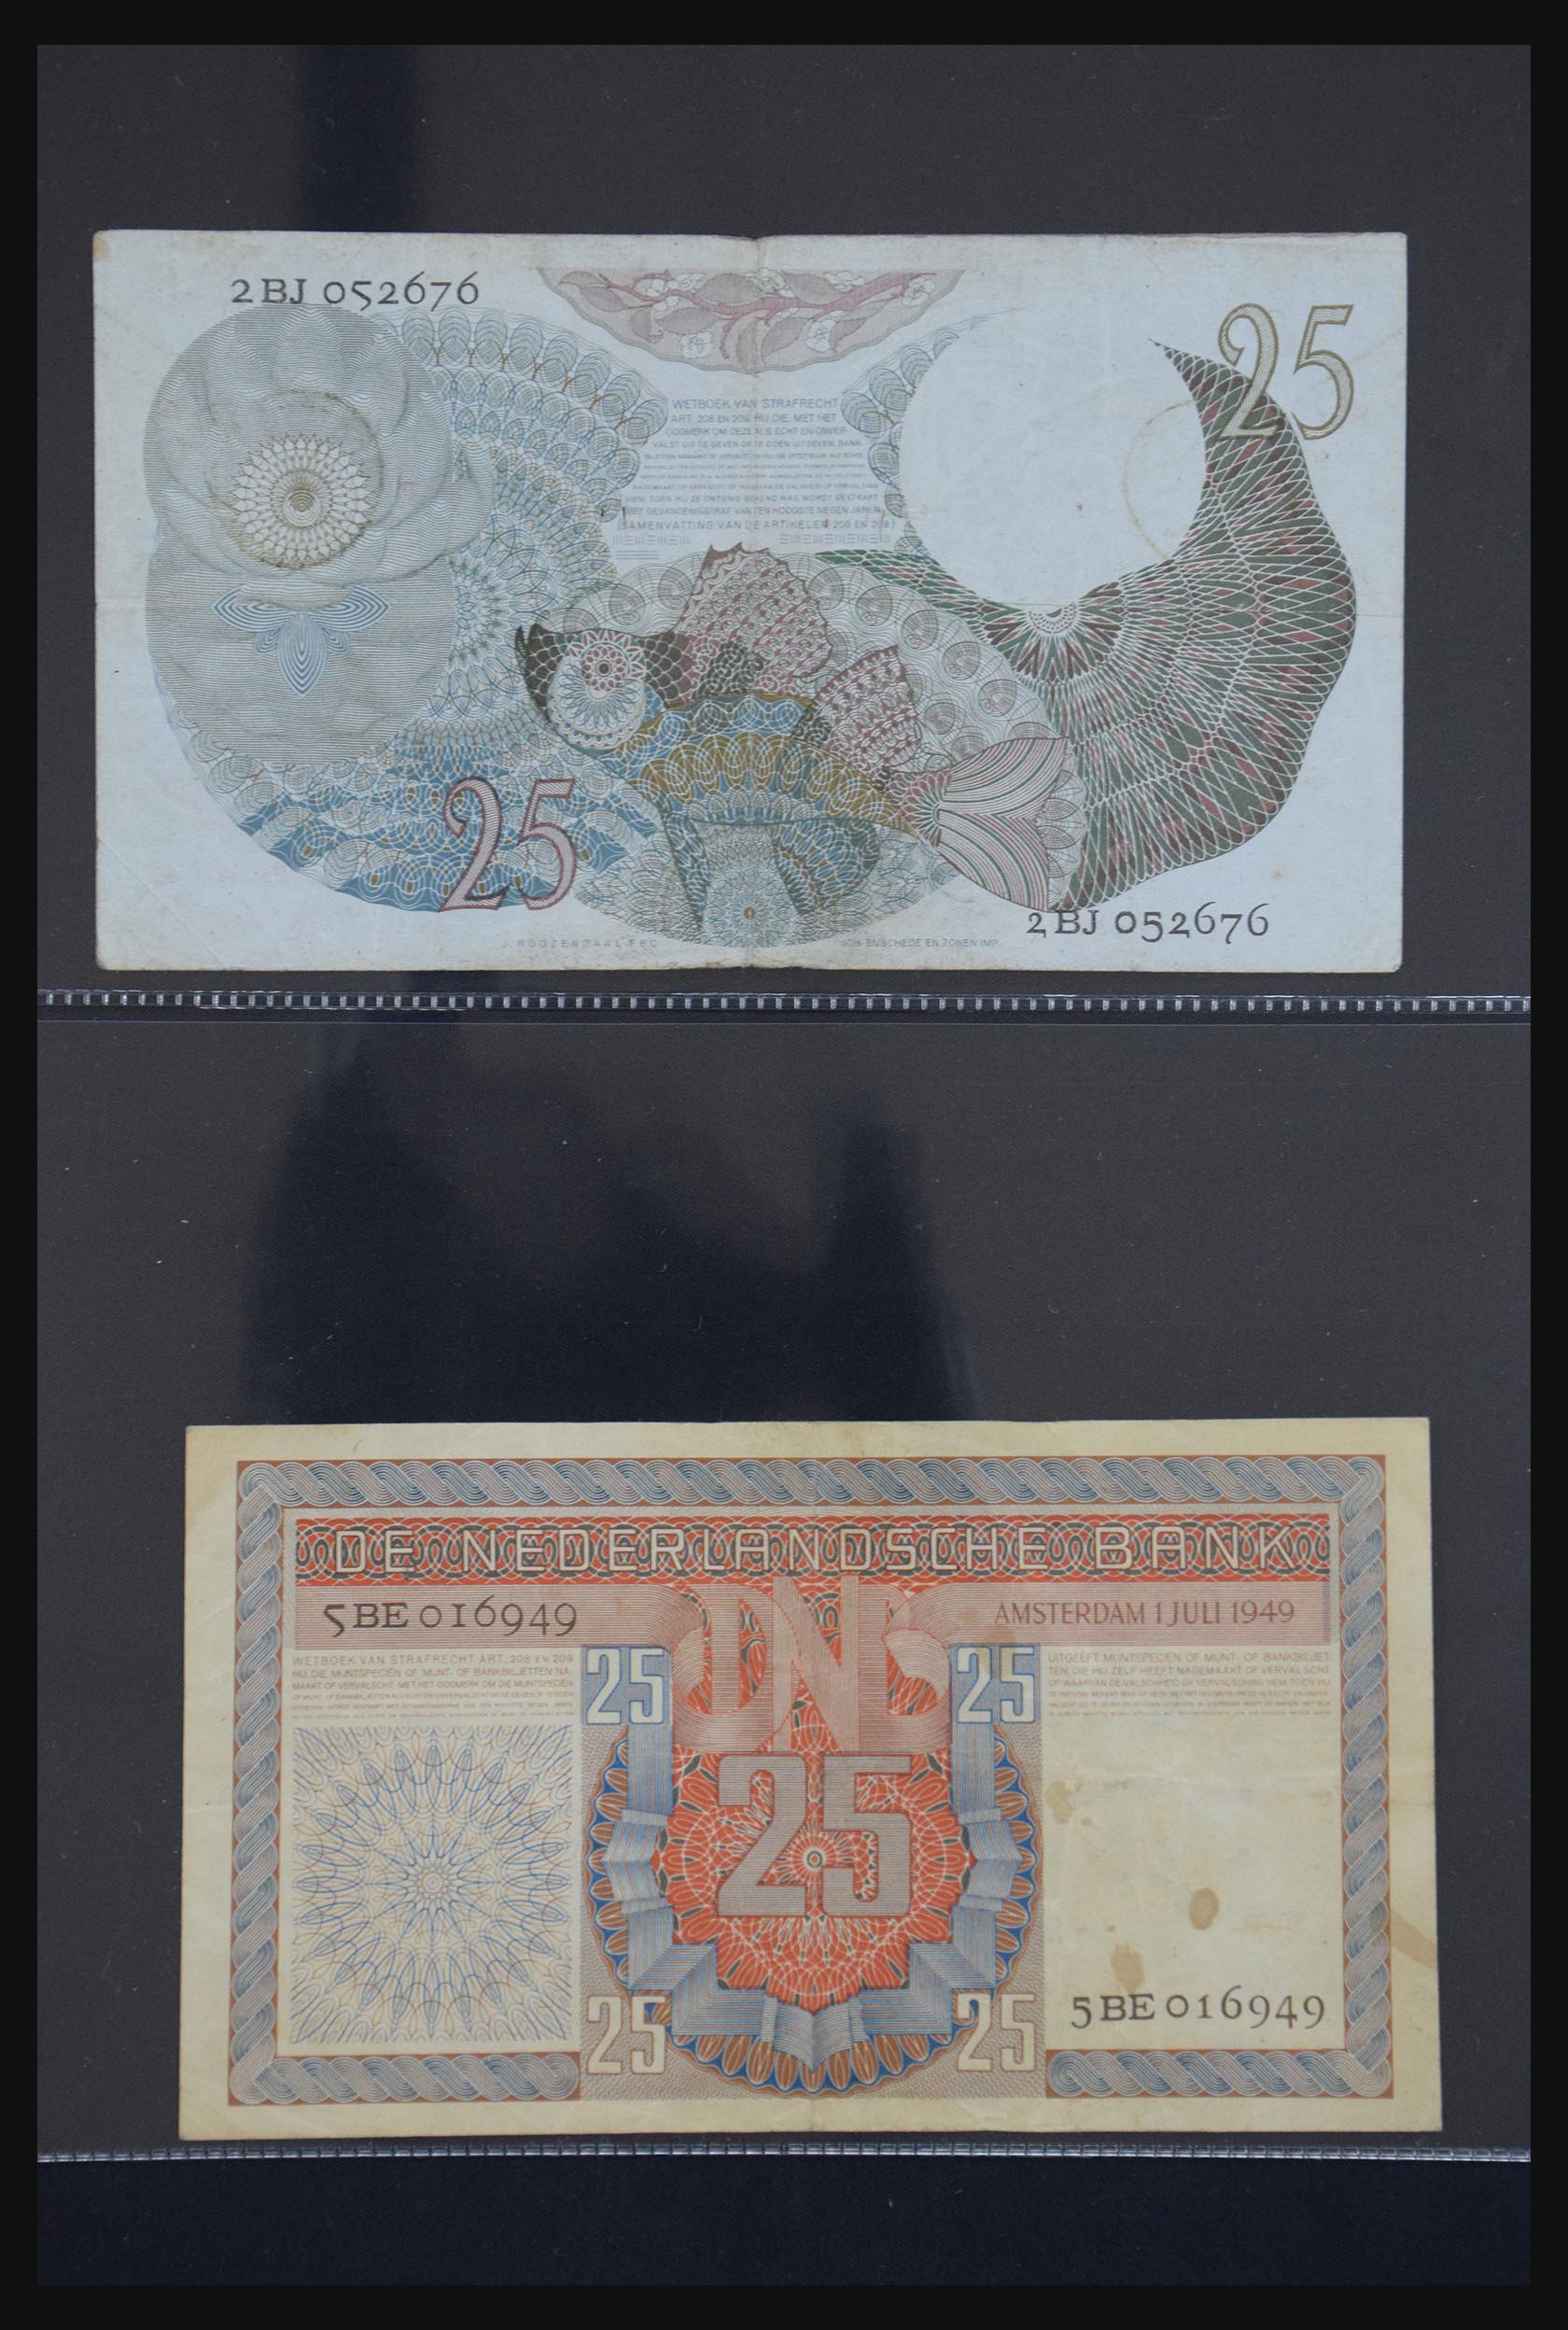 29404 032 - 29404 Nederland bankbiljetten 1924-1997.